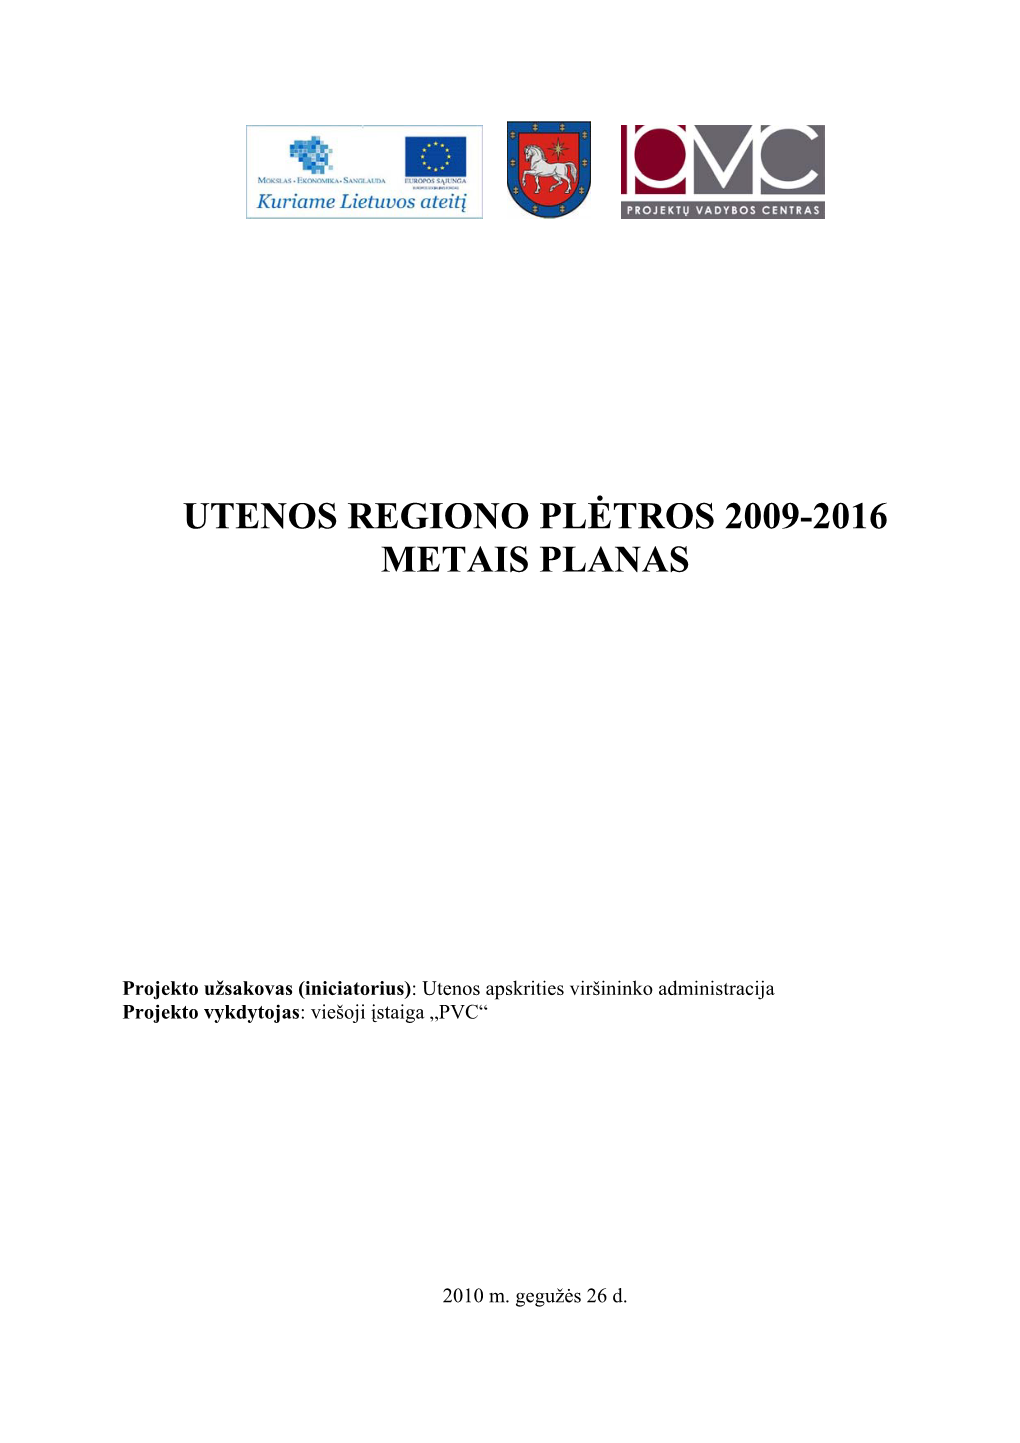 Utenos Regiono Plėtros 2009-2016 Metais Planas